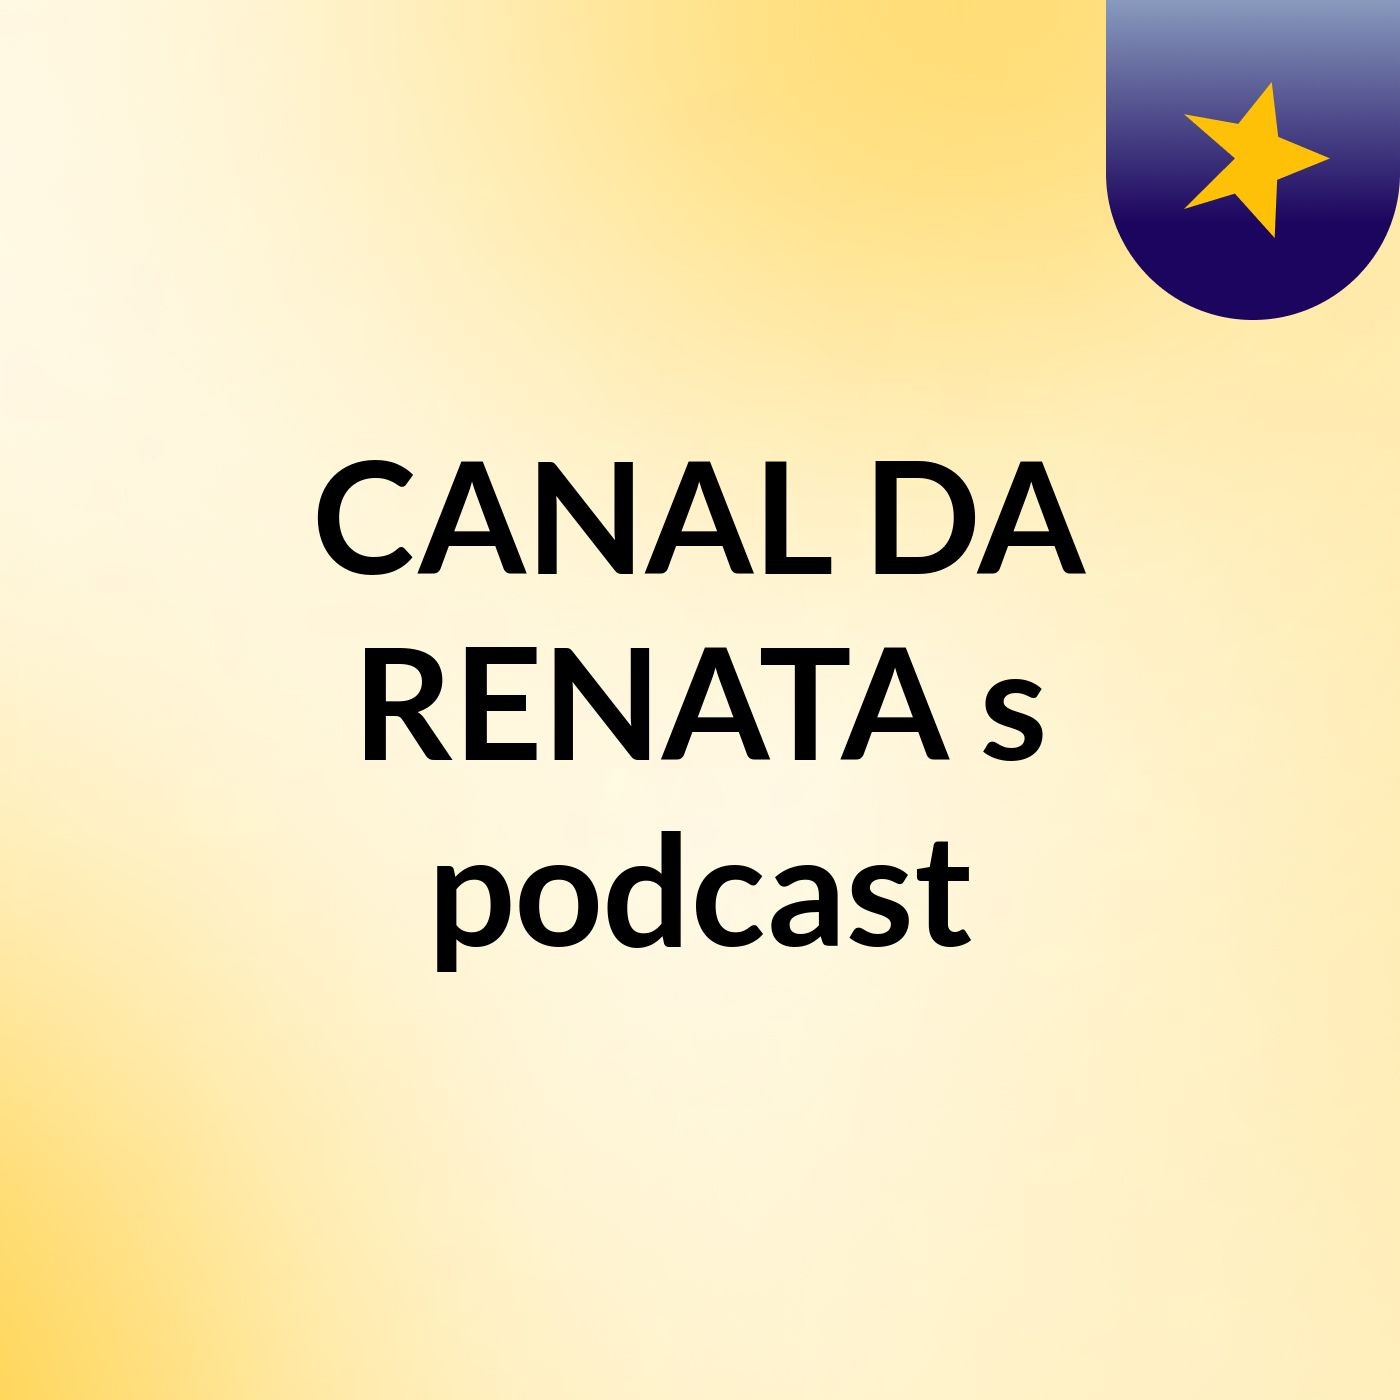 CANAL DA RENATA's podcast